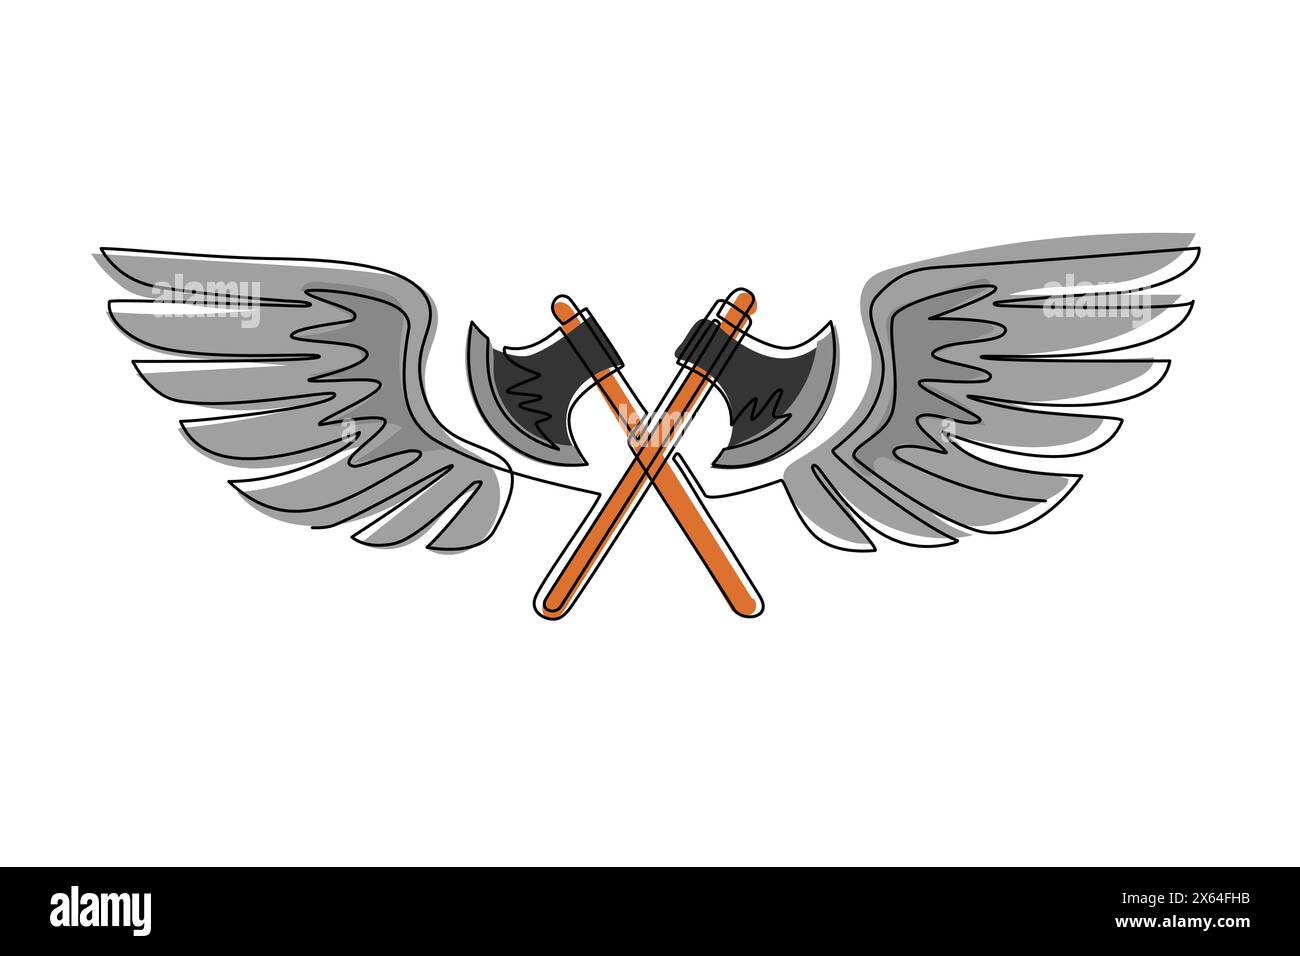 Simple une ligne dessinant deux axes croisés volent avec des ailes. EQUIPEMENT pour bûcheron ou pompier. Logo ailé à deux axes croisés avec une extension élégante Illustration de Vecteur